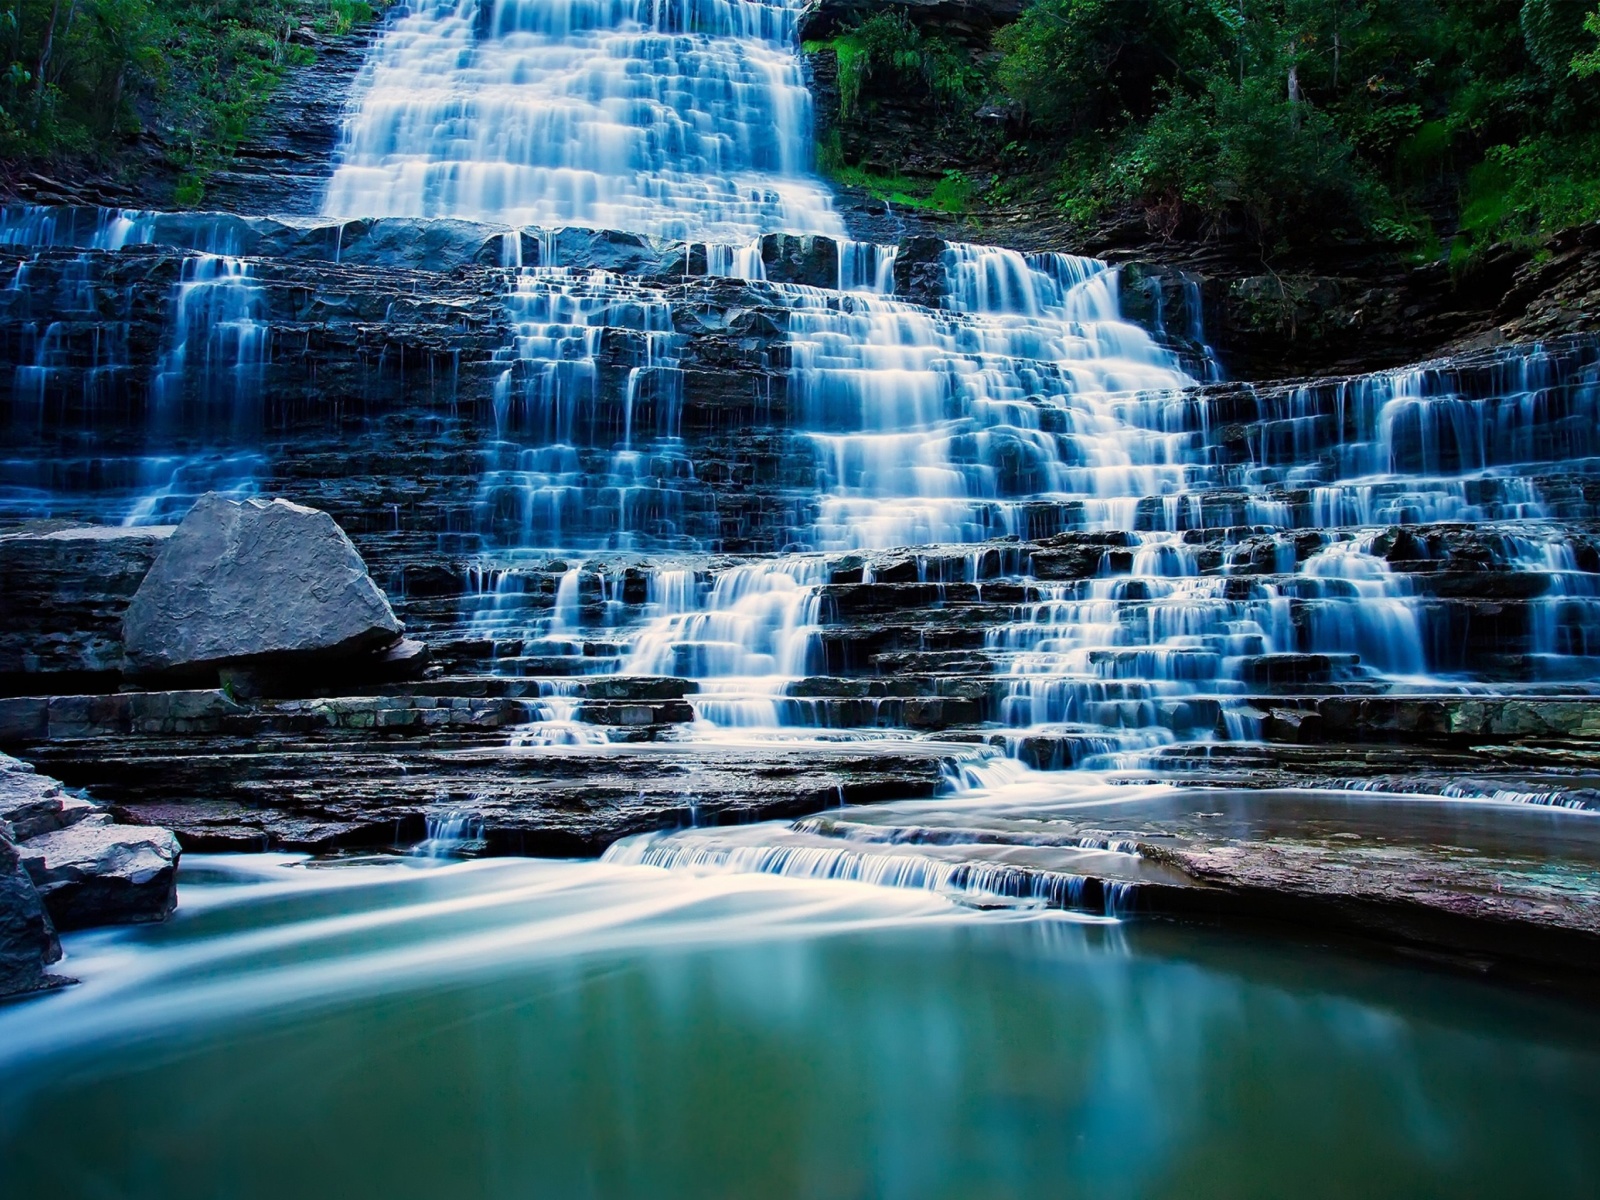 Das Albion Falls cascade waterfall in Hamilton, Ontario, Canada Wallpaper 1600x1200